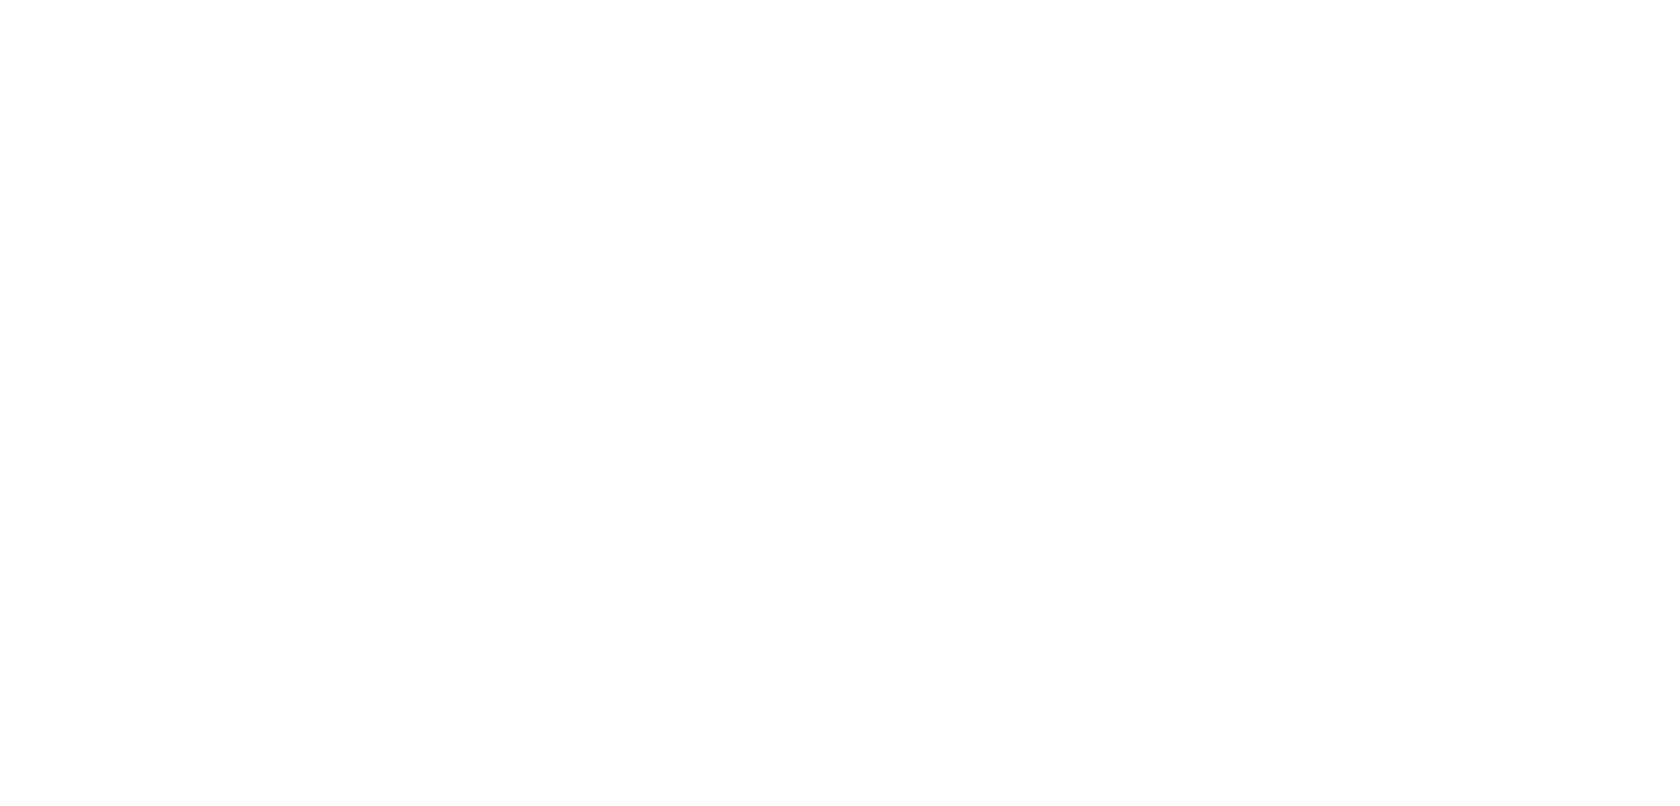 Кейс сервиса BRANDNATION - Фирменный стиль микрофинансовой организации - Кейс брендингового агентства и сервиса BRANDNATION. Брендинговое агентство BRANDNATION в Москве и Санкт-Петербурге. Услуги: разработка логотипа и фирменного стиля, дизайн упаковки, брендбук, ребрендинг, разработка сайта.